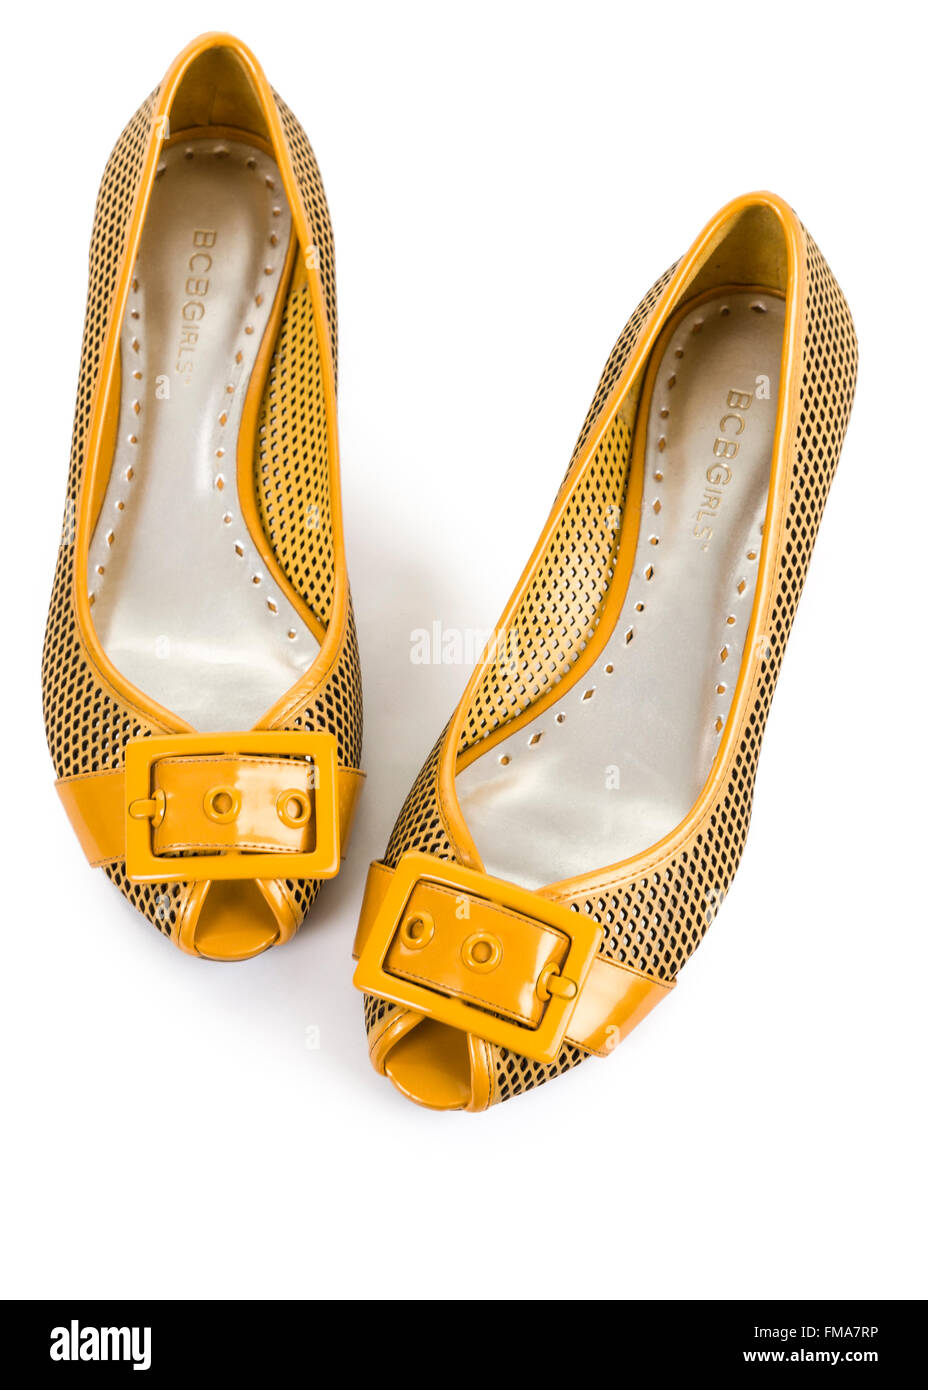 Il brevetto di colore giallo cuoio ballerina flat punta aperta scarpe pompe isolati su sfondo bianco modello di rilascio: No. Proprietà di rilascio: No. Foto Stock